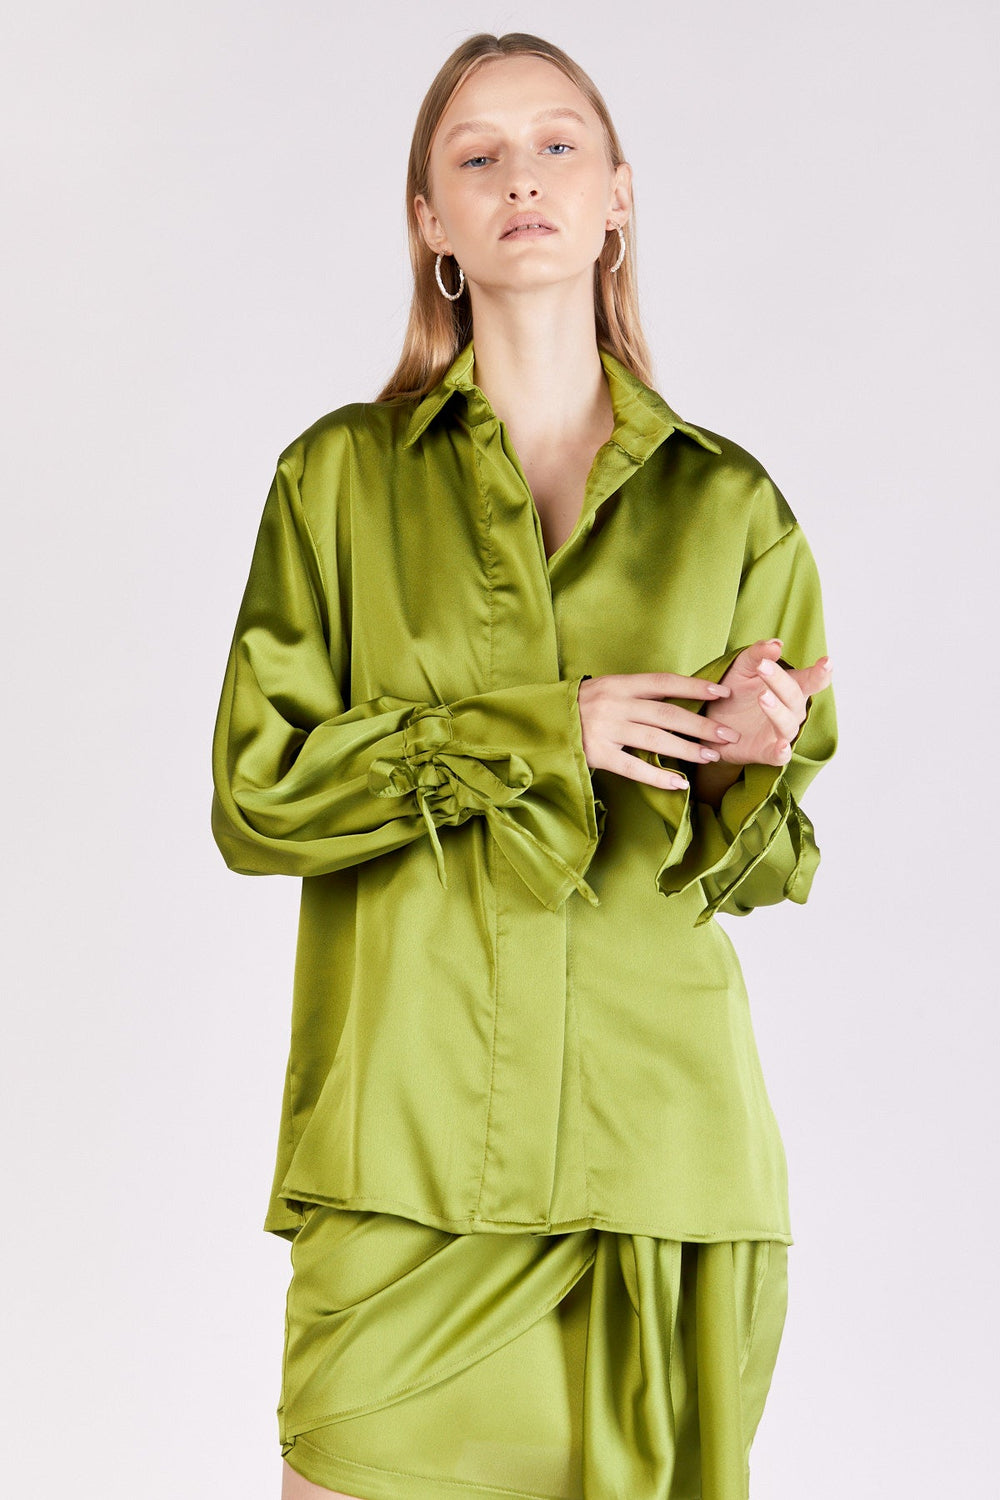 חולצת אלדן בצבע ירוק - Dana Sidi